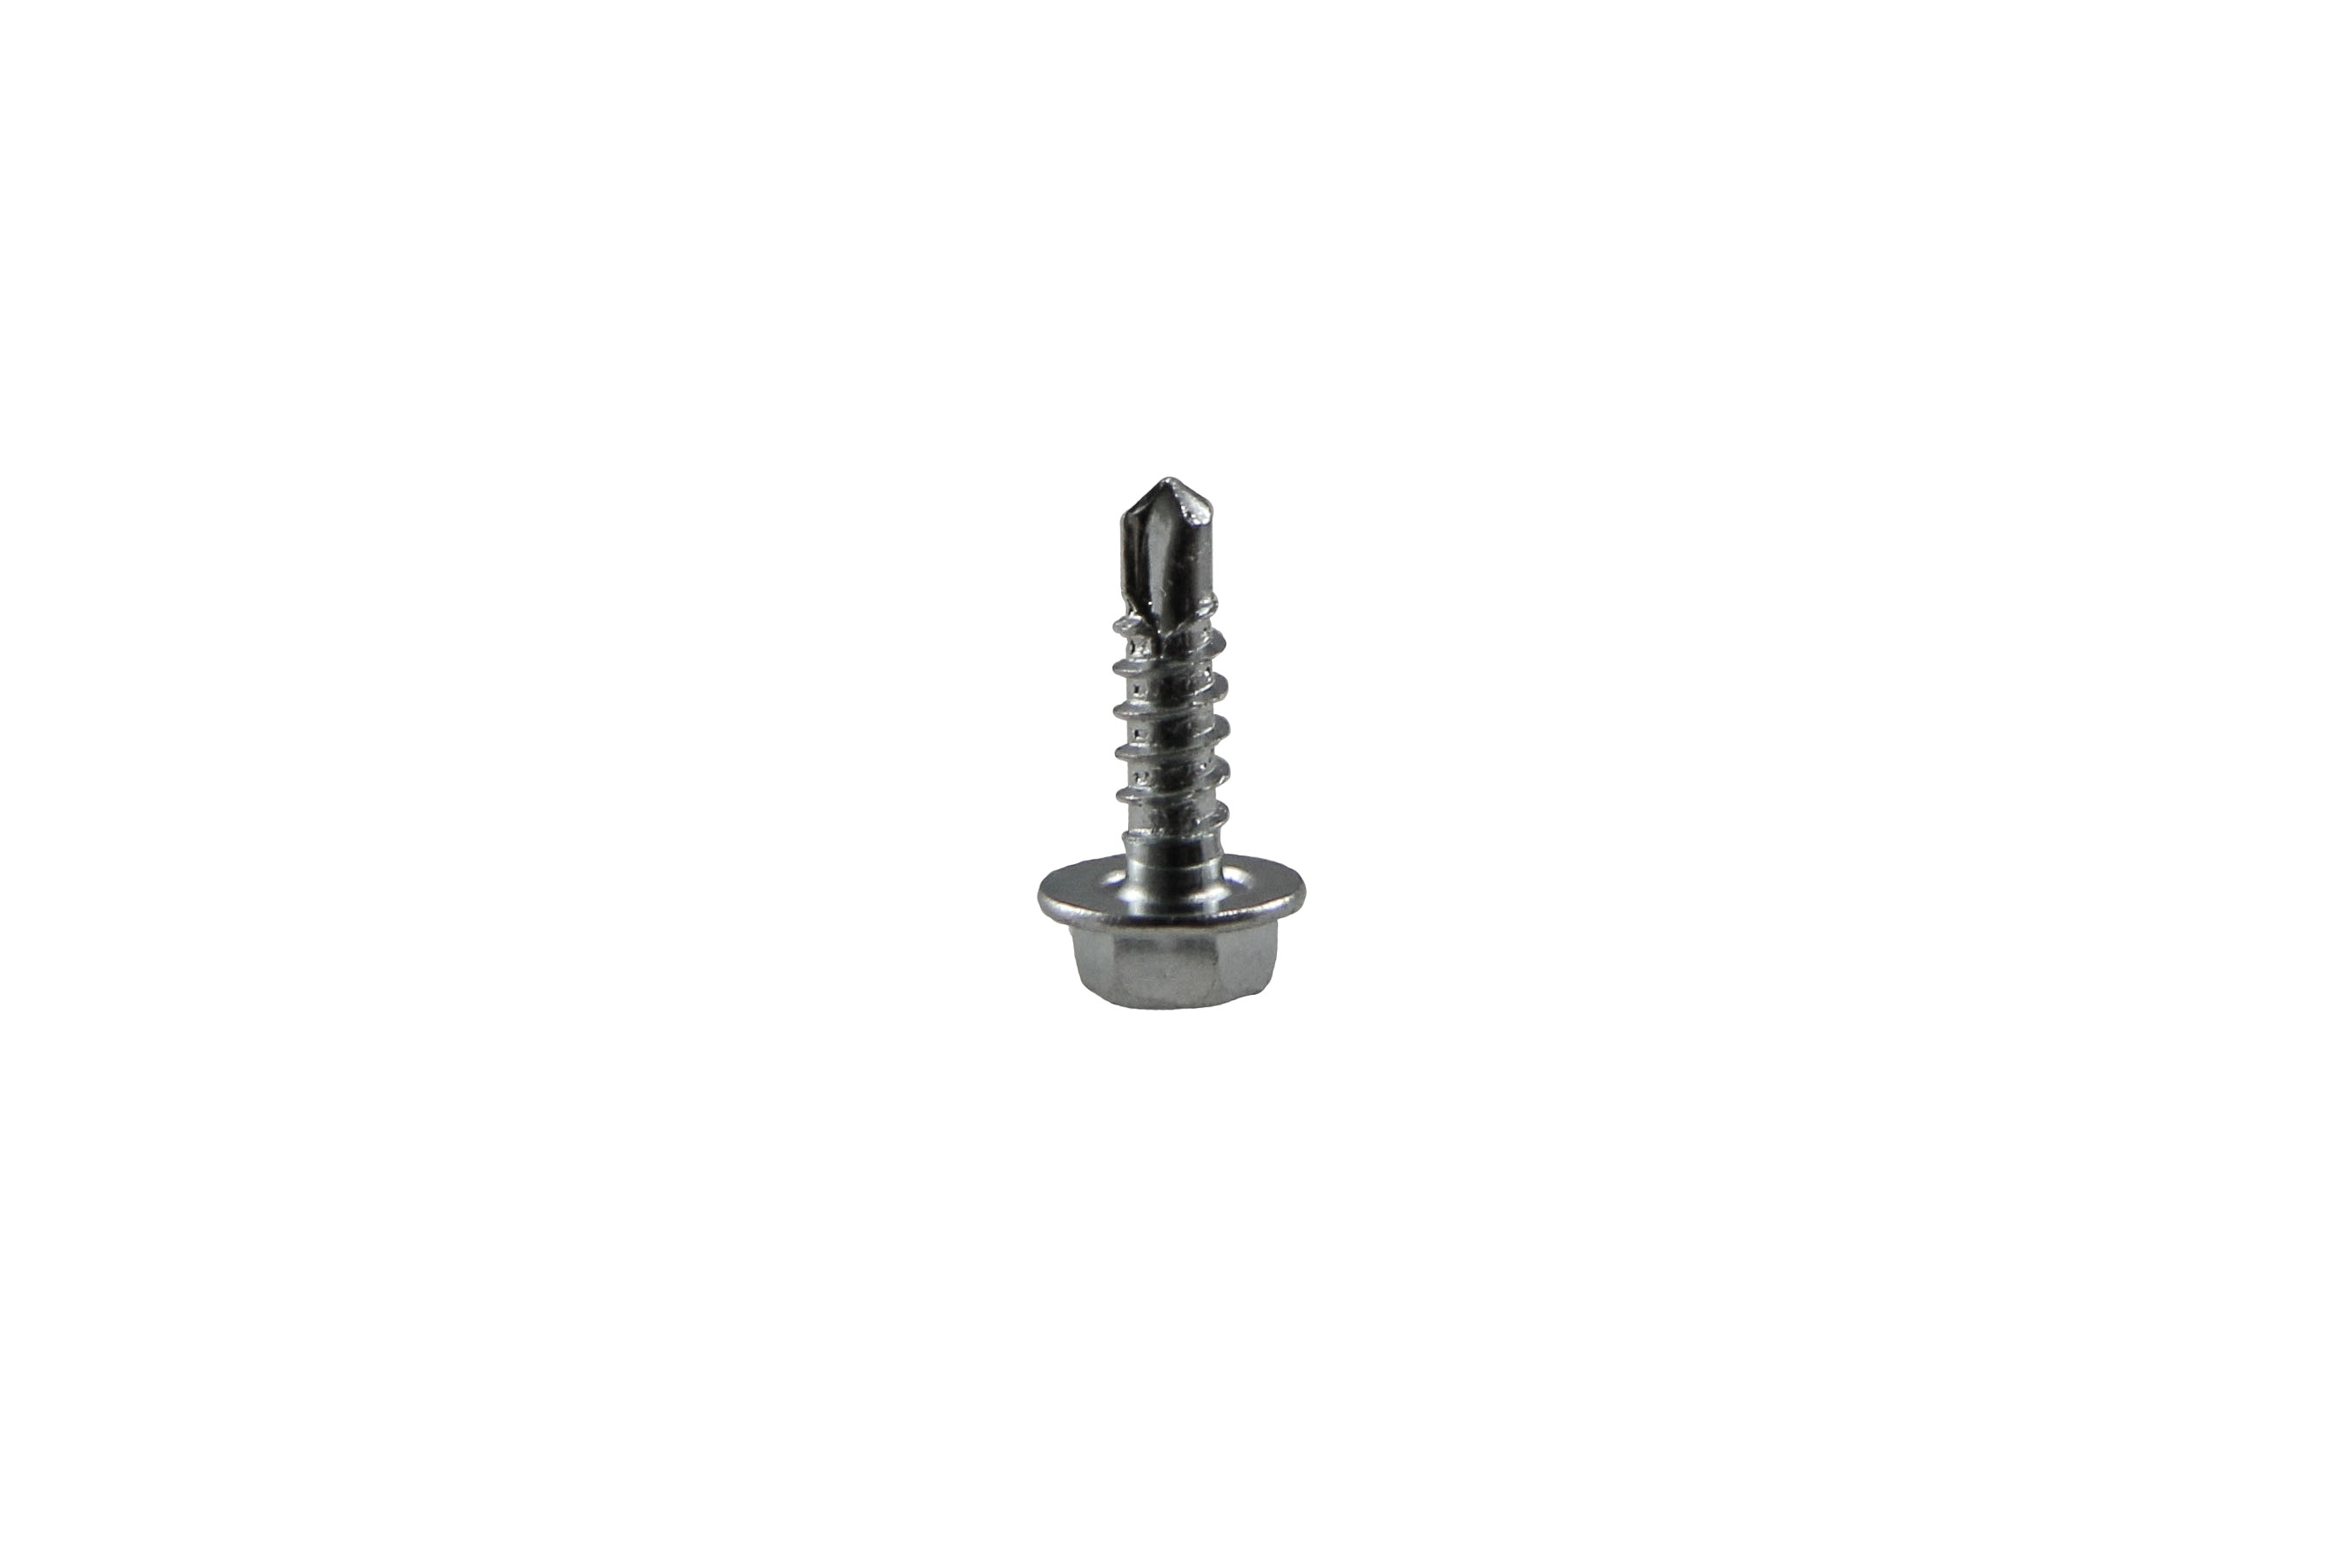 Drilling screw 3,5 x 16 mm